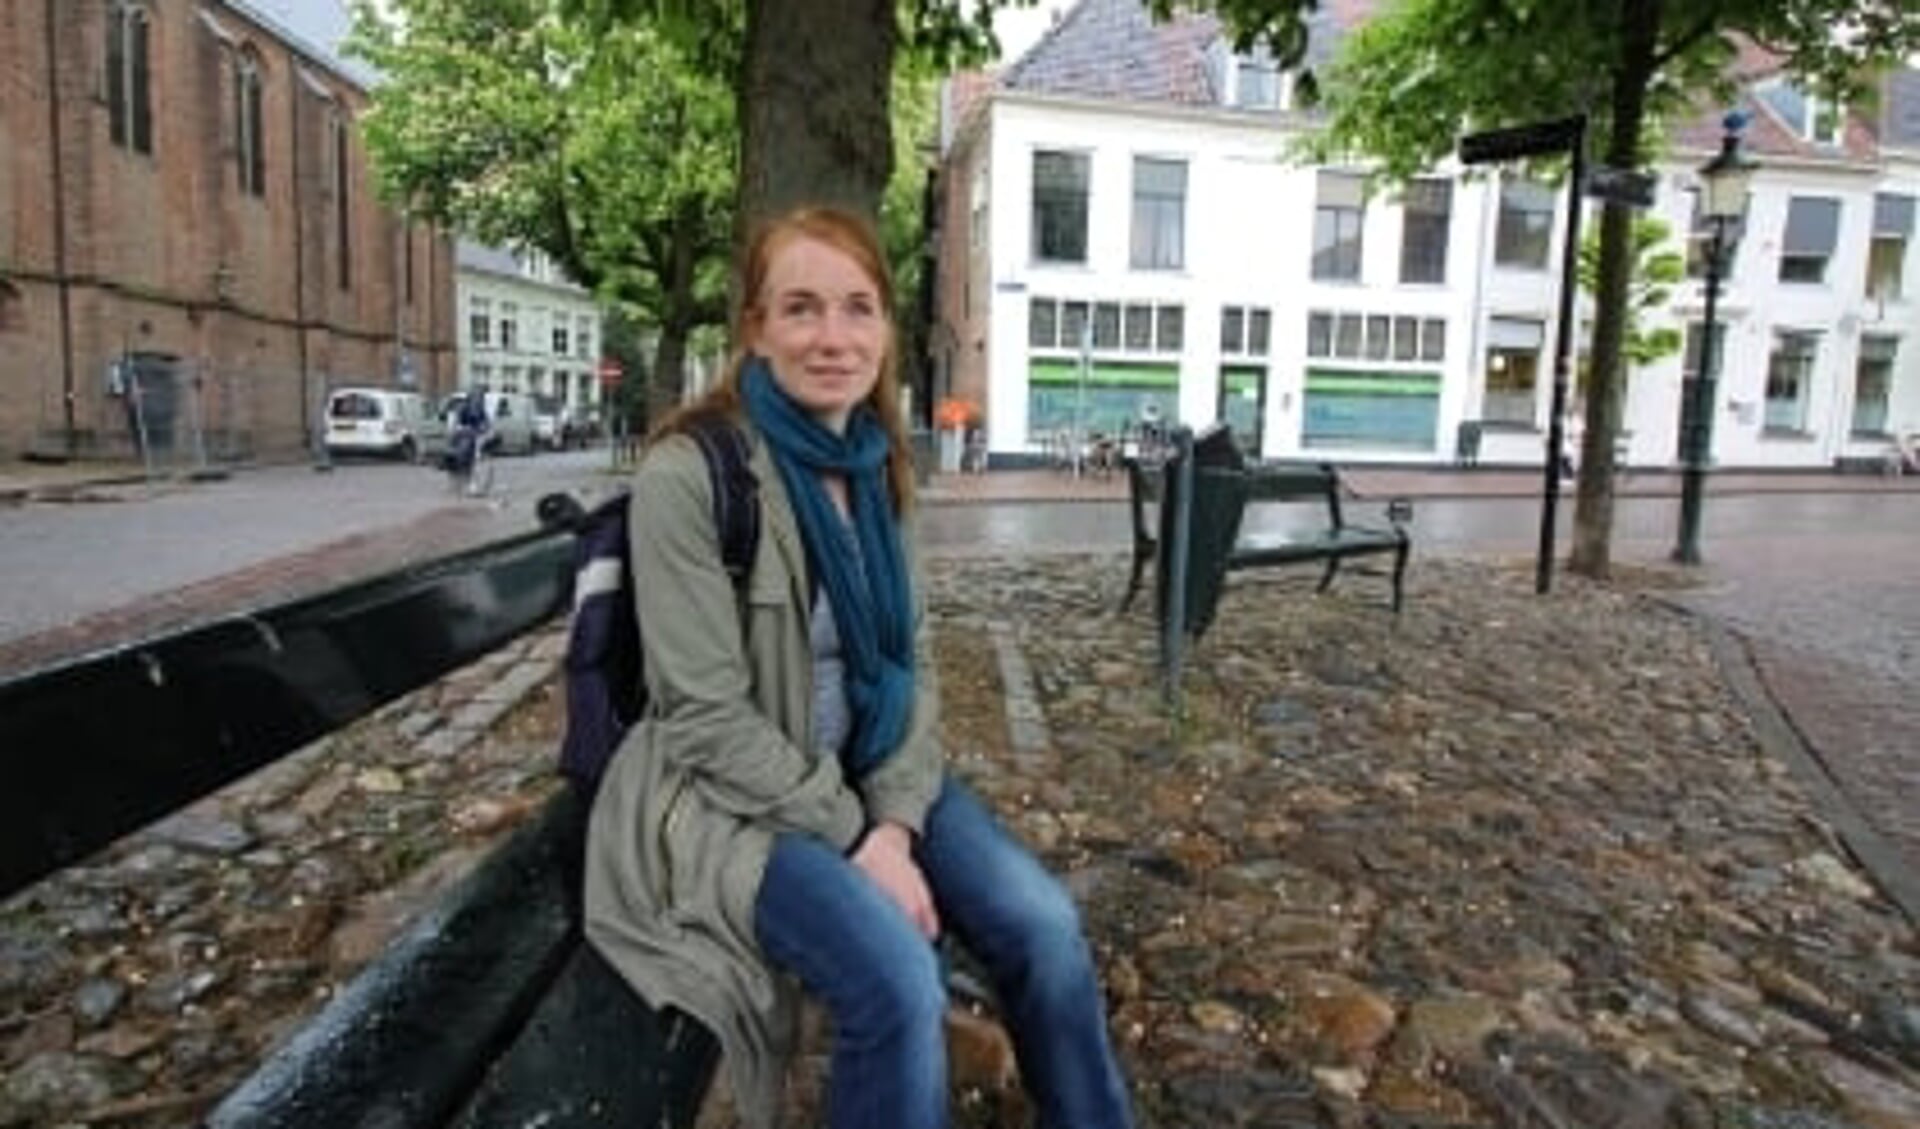  ,,De vraag ‘Hoe kan ik je helpen?’ is voor mij de belangrijkste om te stellen aan iemand die dak- of thuisloos is”, zegt Bernadette van Dijk, straatpastor in Amersfoort. 